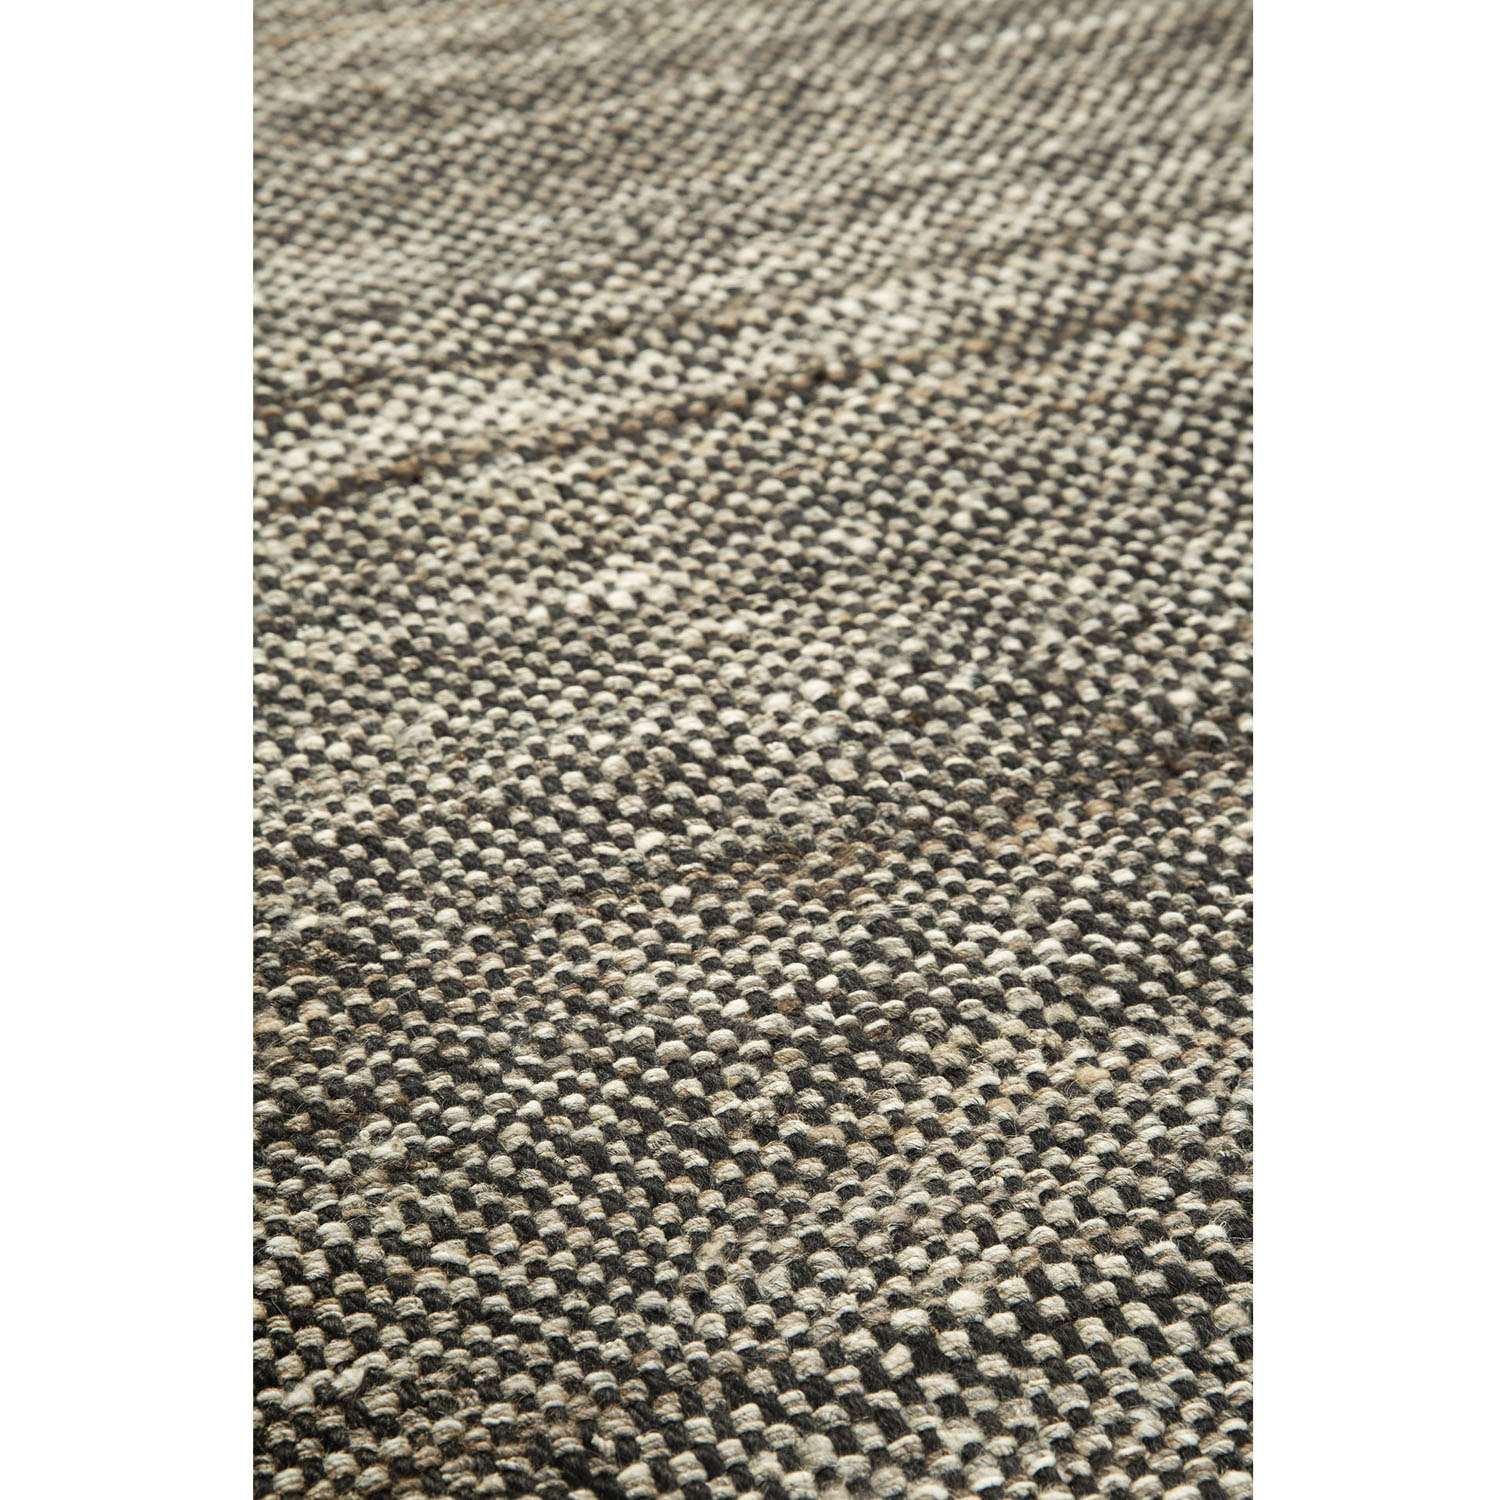 Checked Kilim-Teppich Natur 100 % handgesponnene Wolle 21728